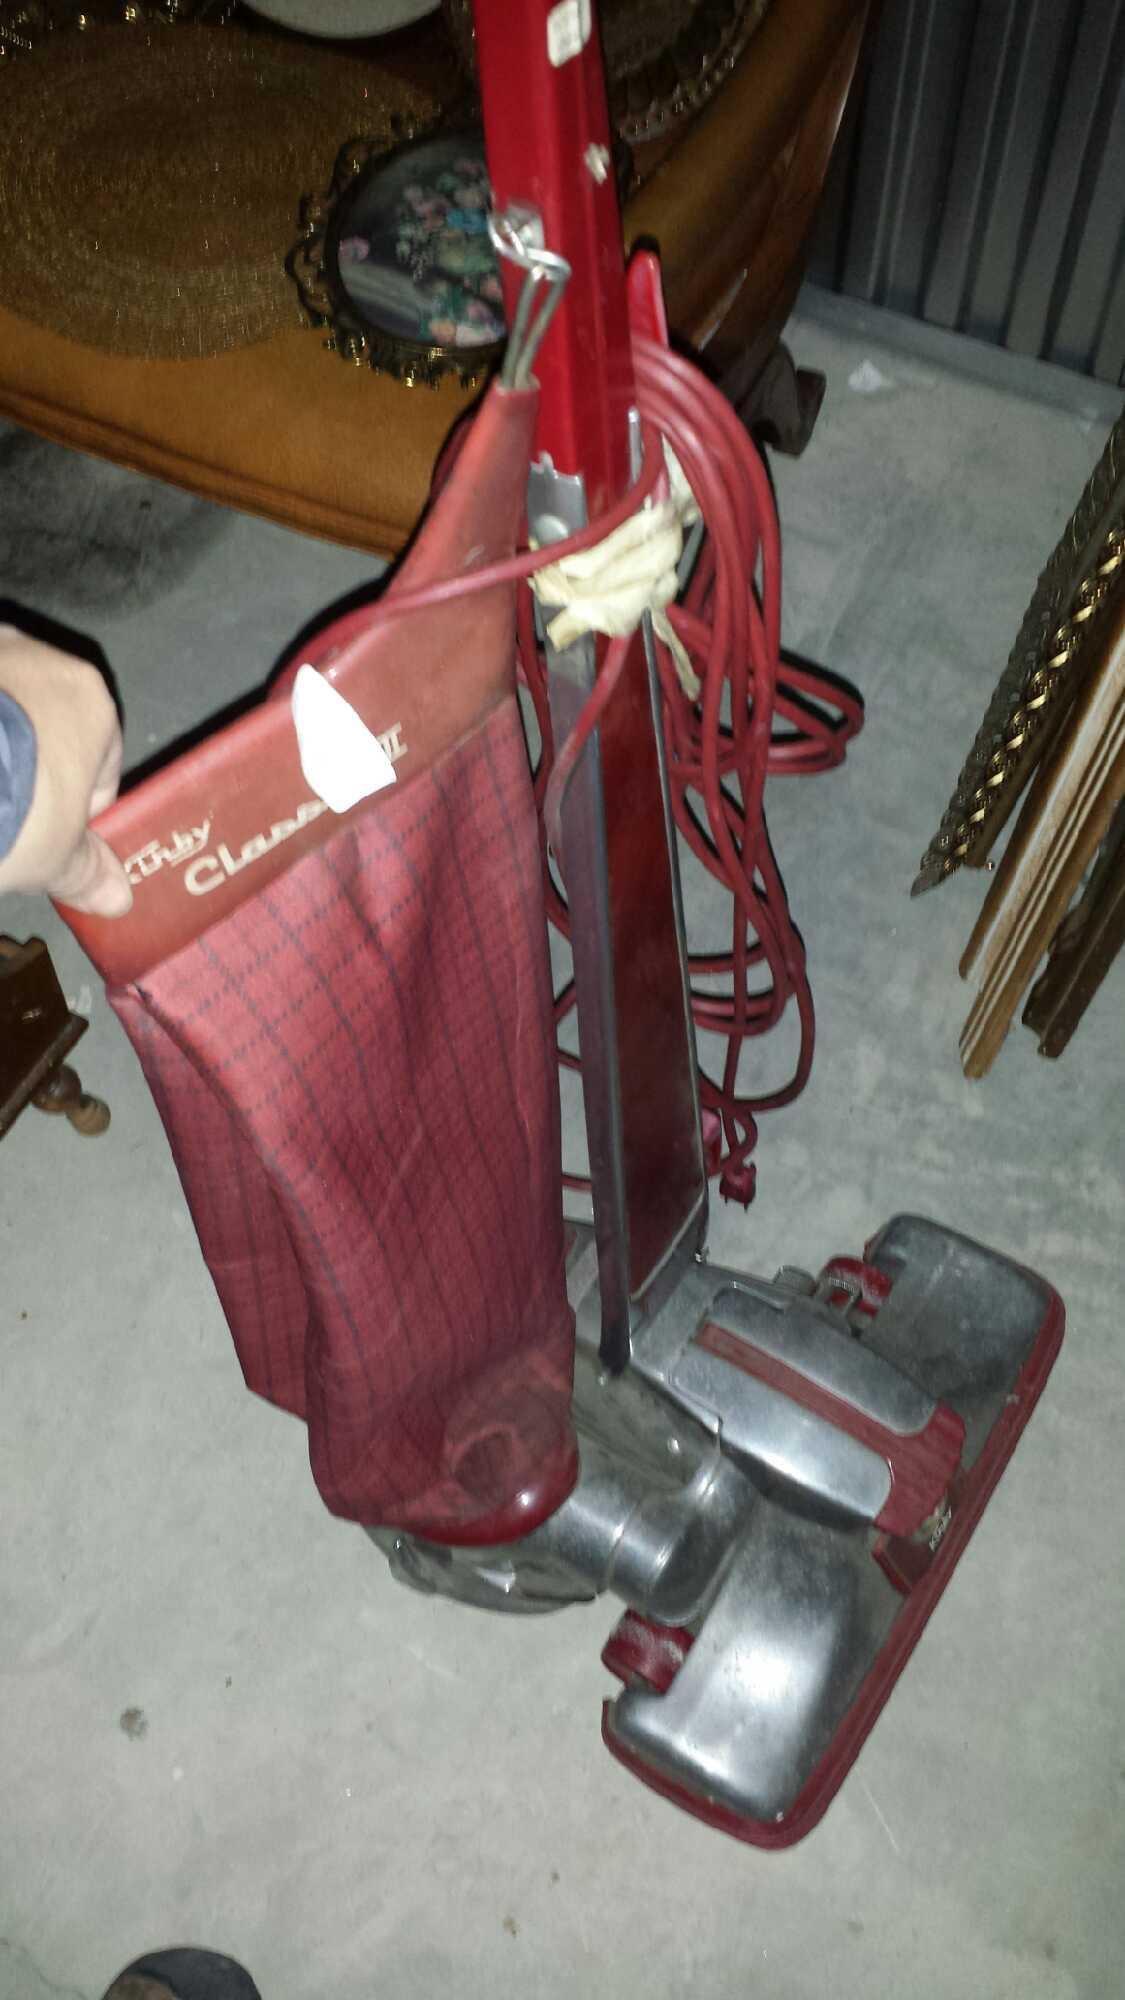 Vintage Kirby Classic III Vacuum